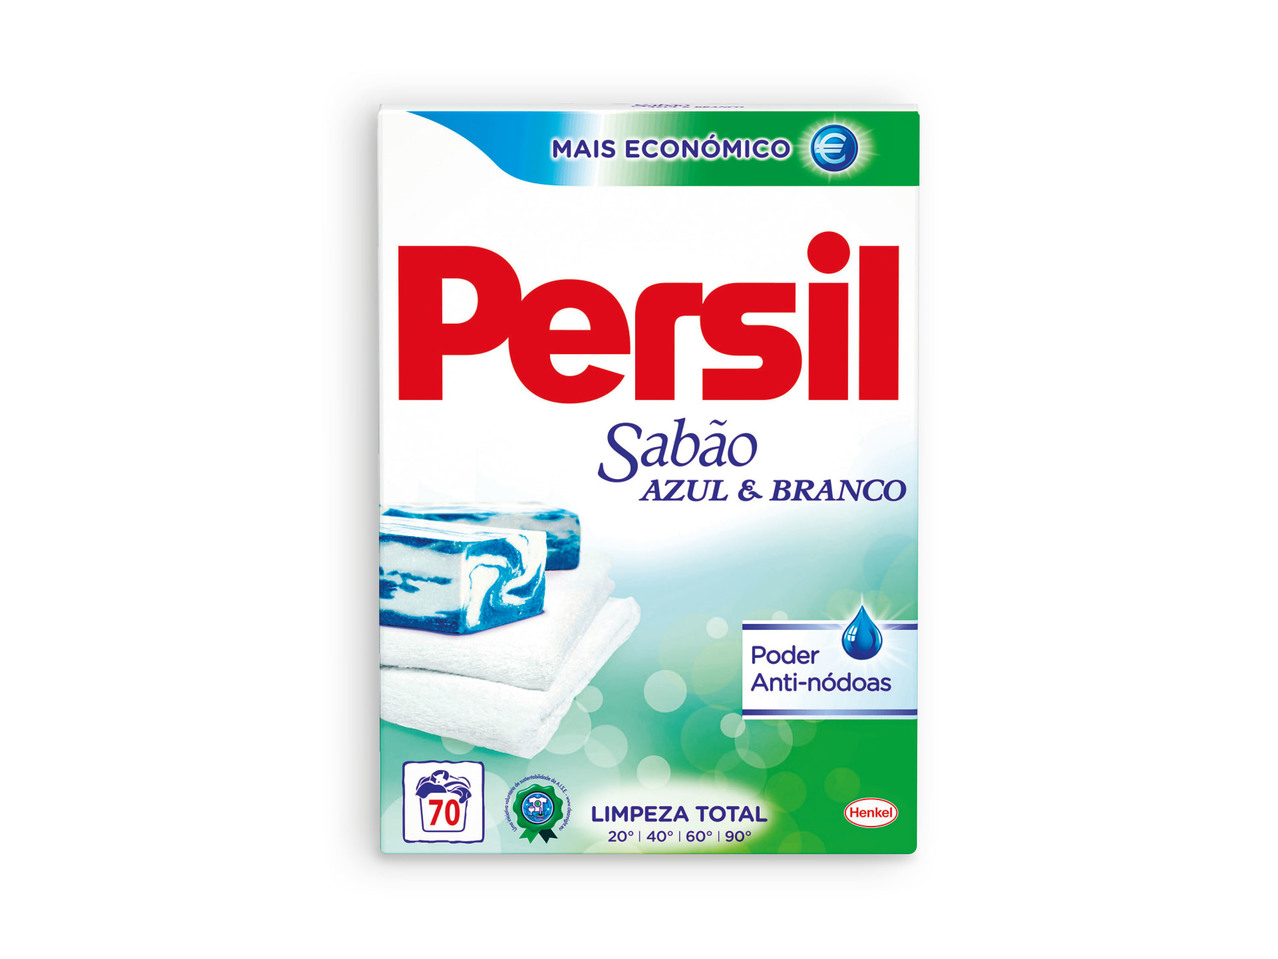 PERSIL(R) Detergente em Pó para Roupa Sabão Azul & Branco